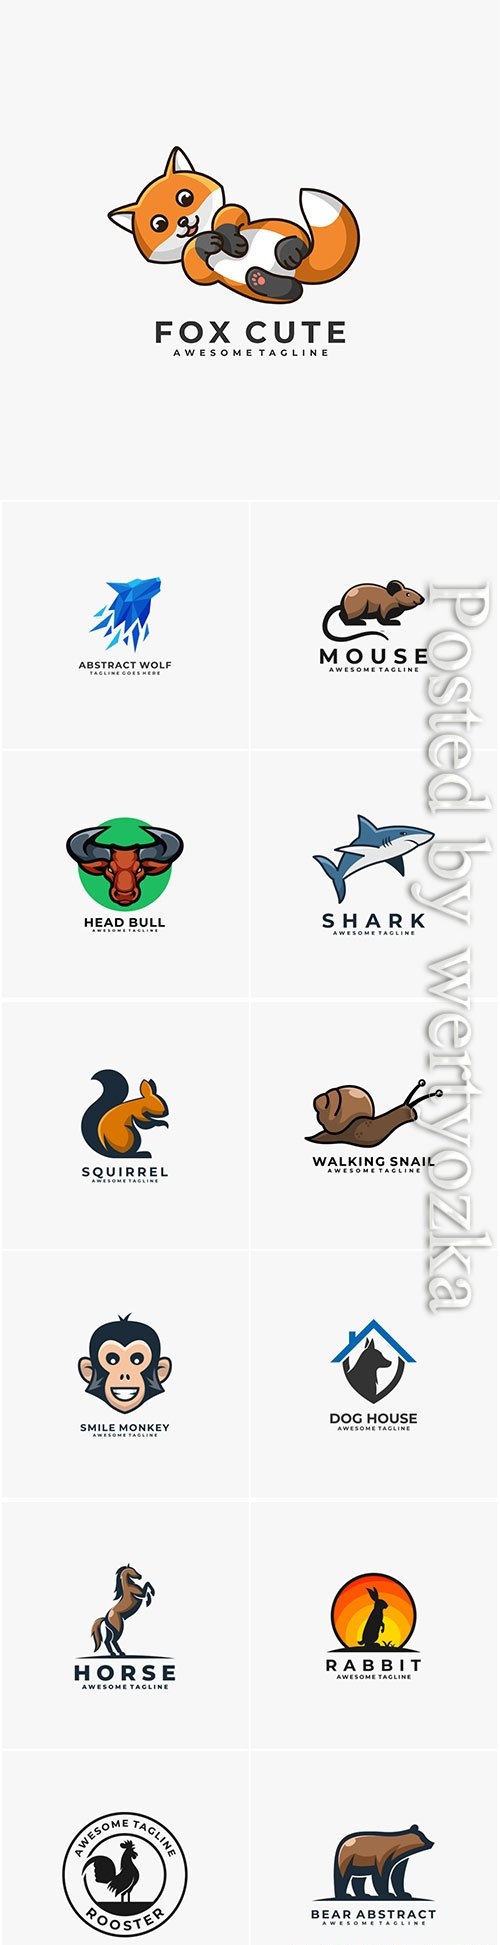 Animals and birds logos in vector vol 3